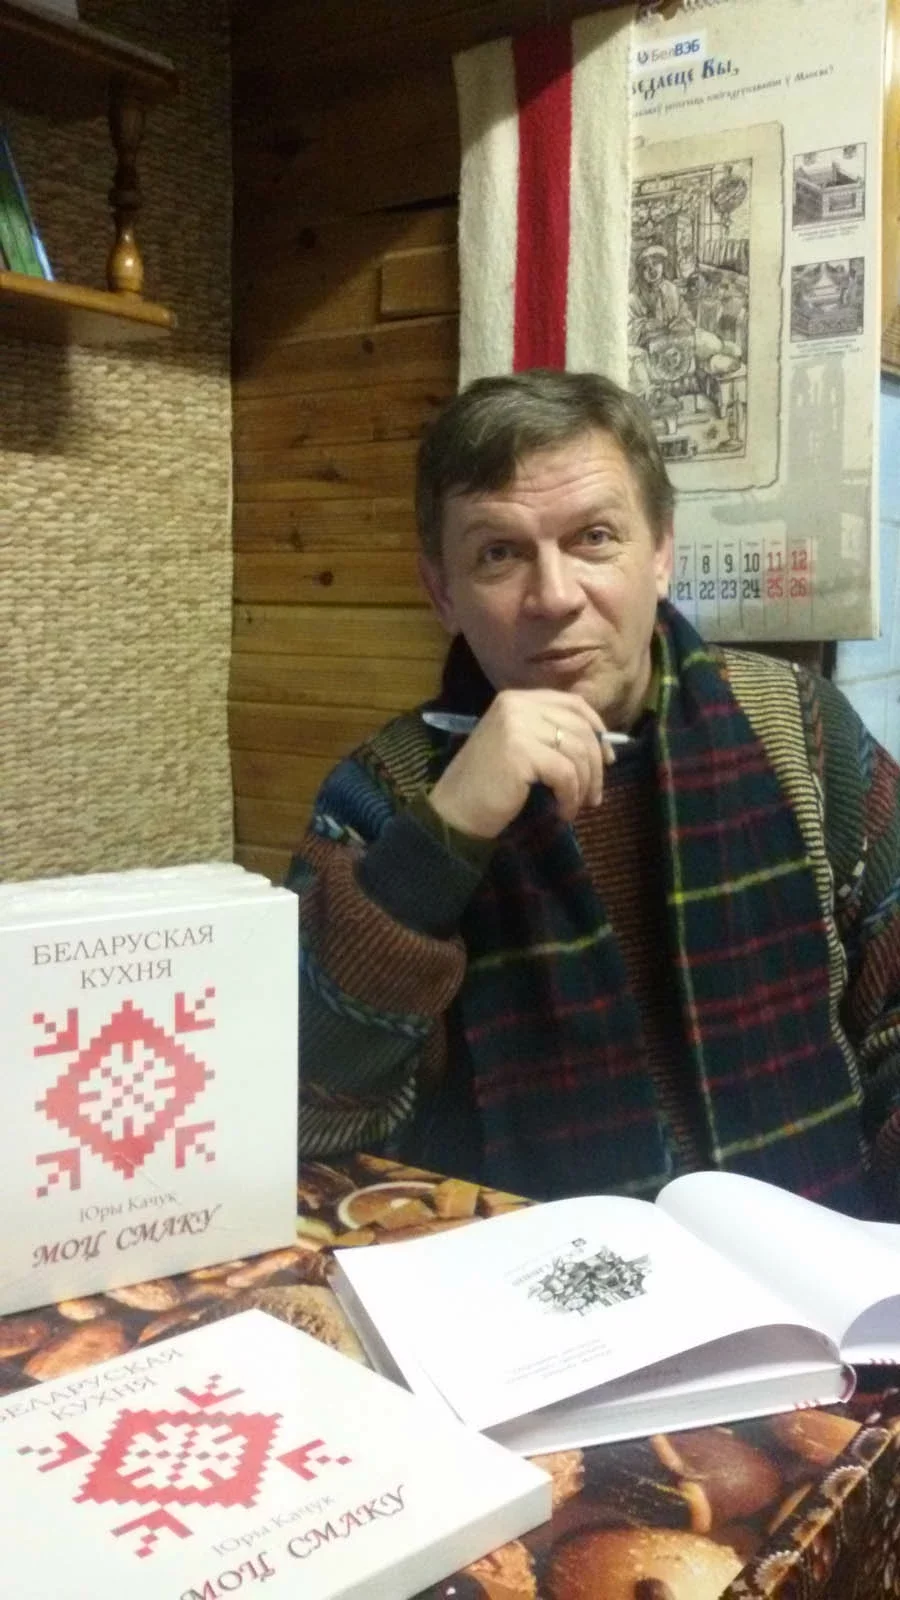 Юрий Качук с последними экземплярами «Моцы смаку».